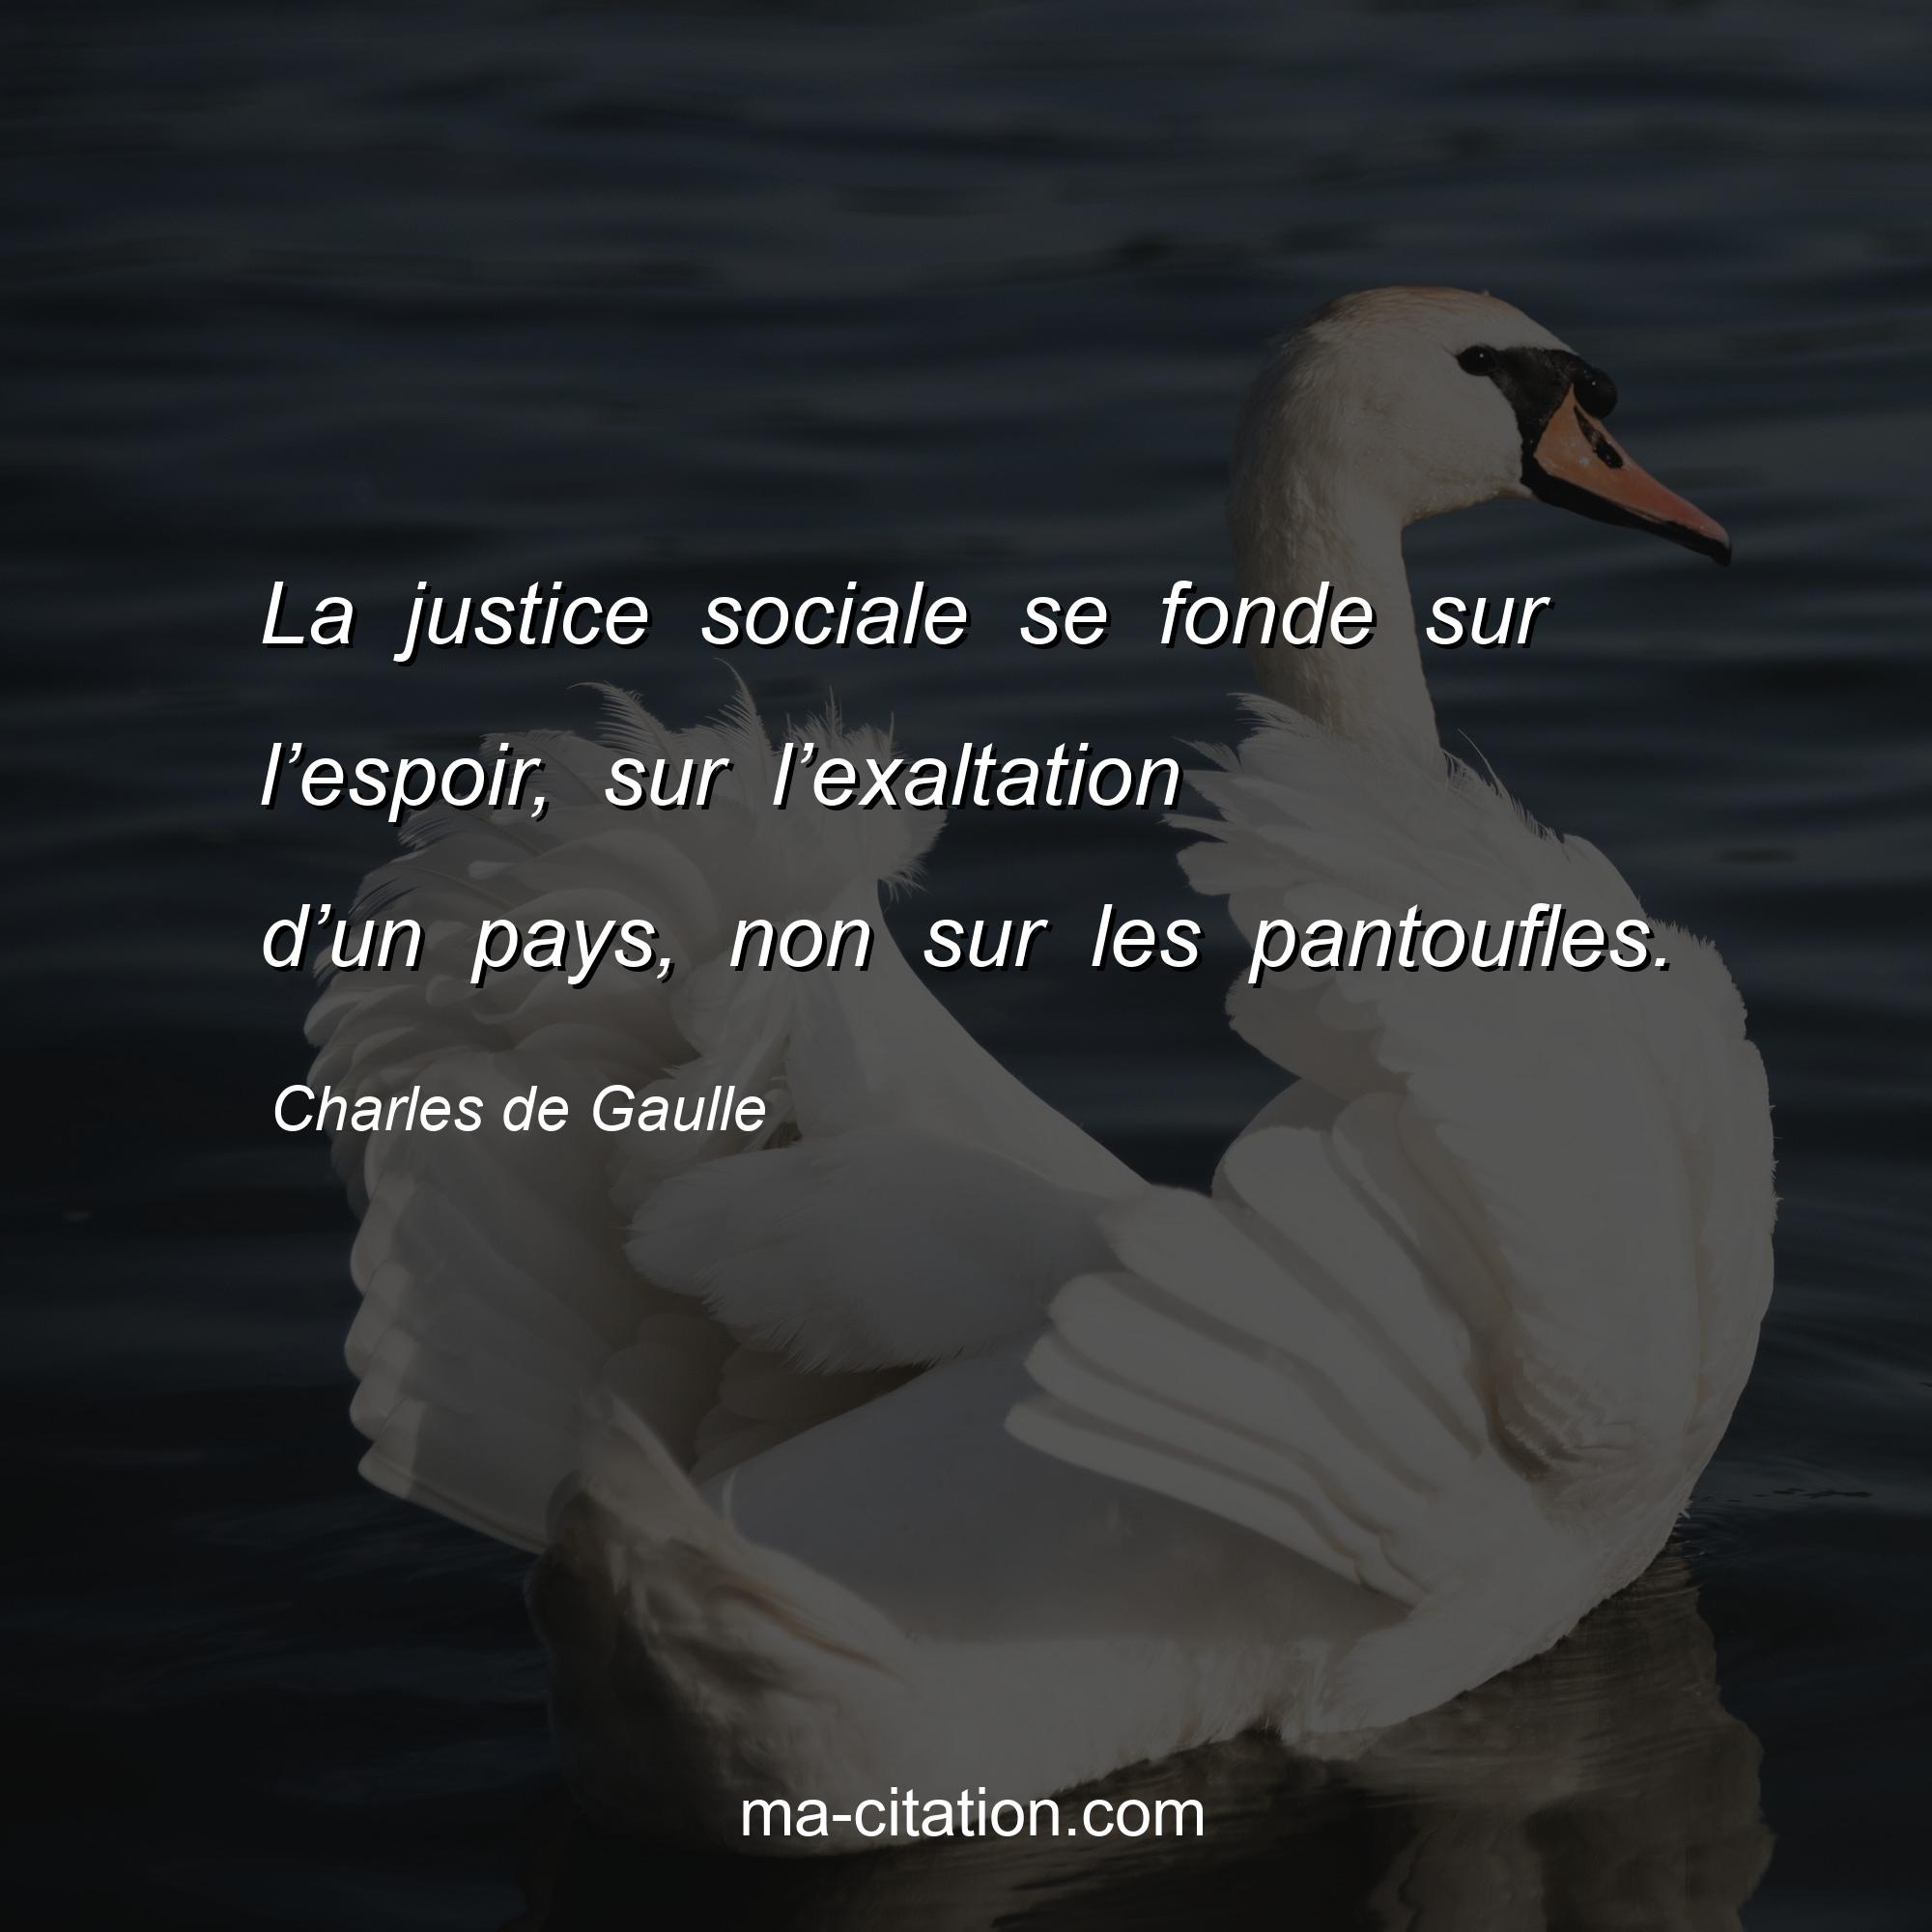 Charles de Gaulle : La justice sociale se fonde sur l’espoir, sur l’exaltation d’un pays, non sur les pantoufles.